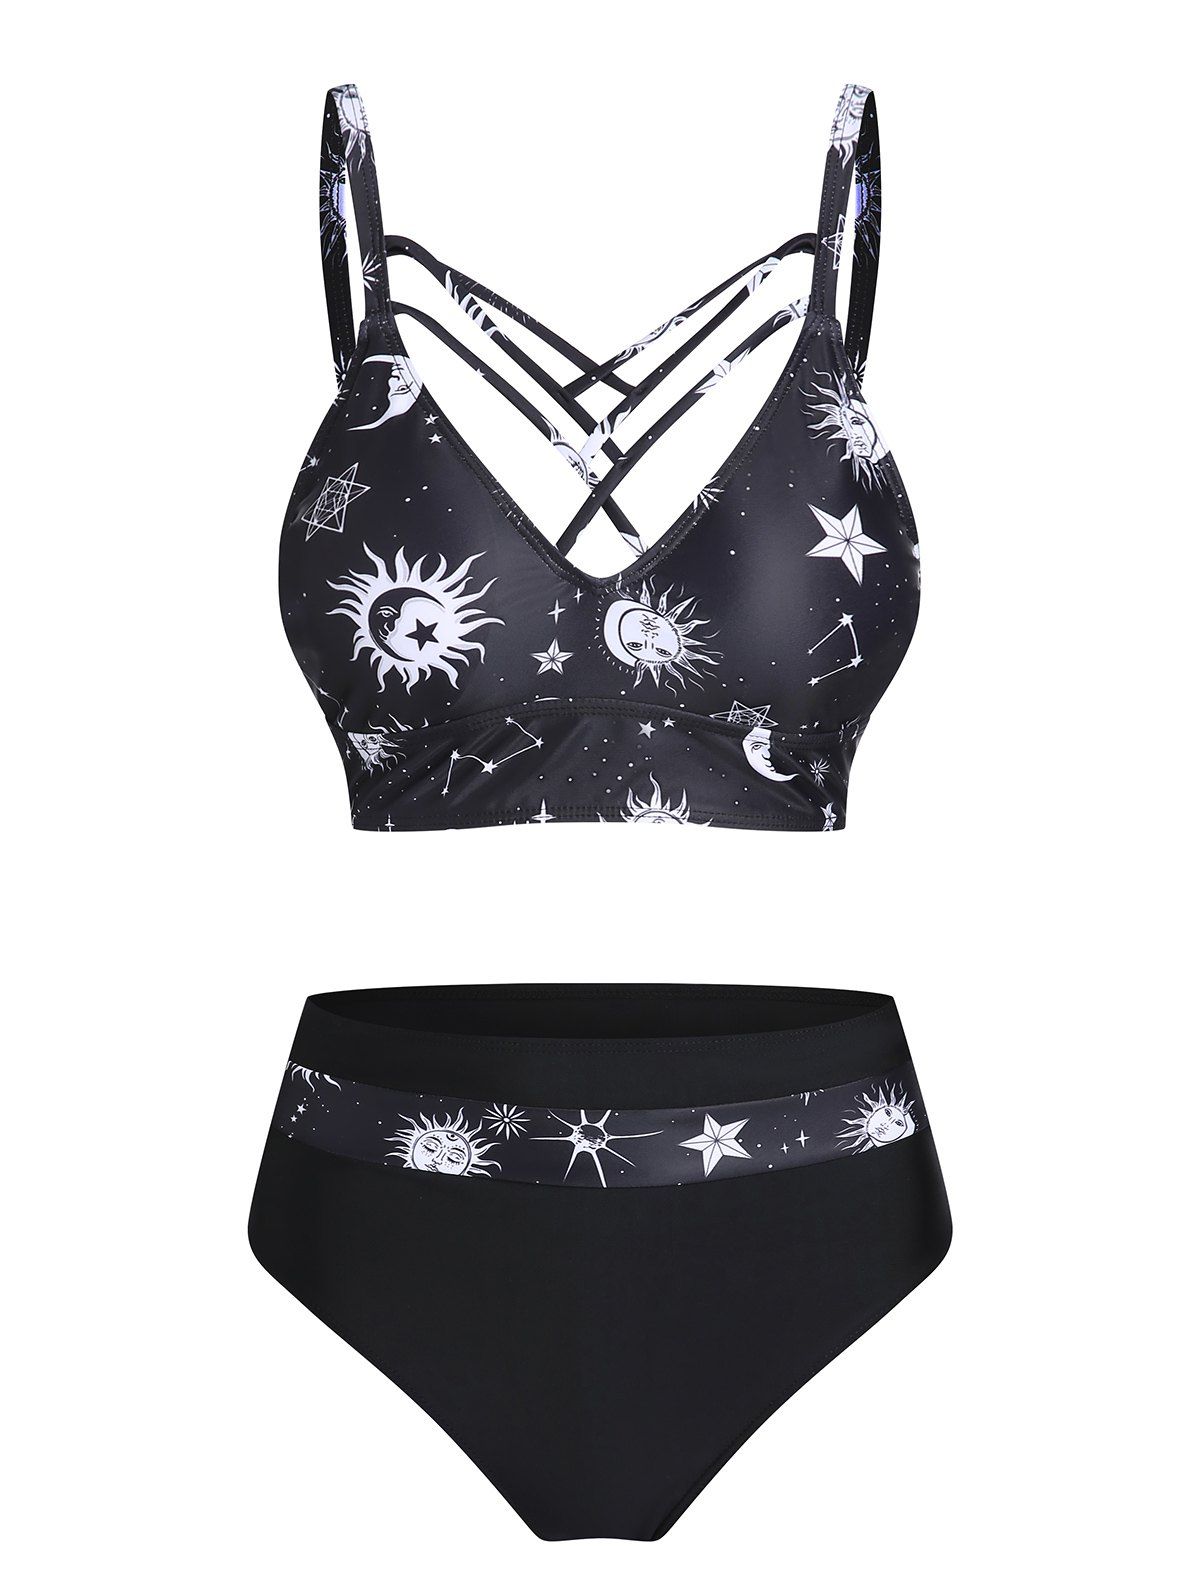 Vintage Swimwear Tummy Control Tankini Swimsuit Sun Moon Print Lattice Strap Summer Vacation Bathing Suit - BLACK XXXL